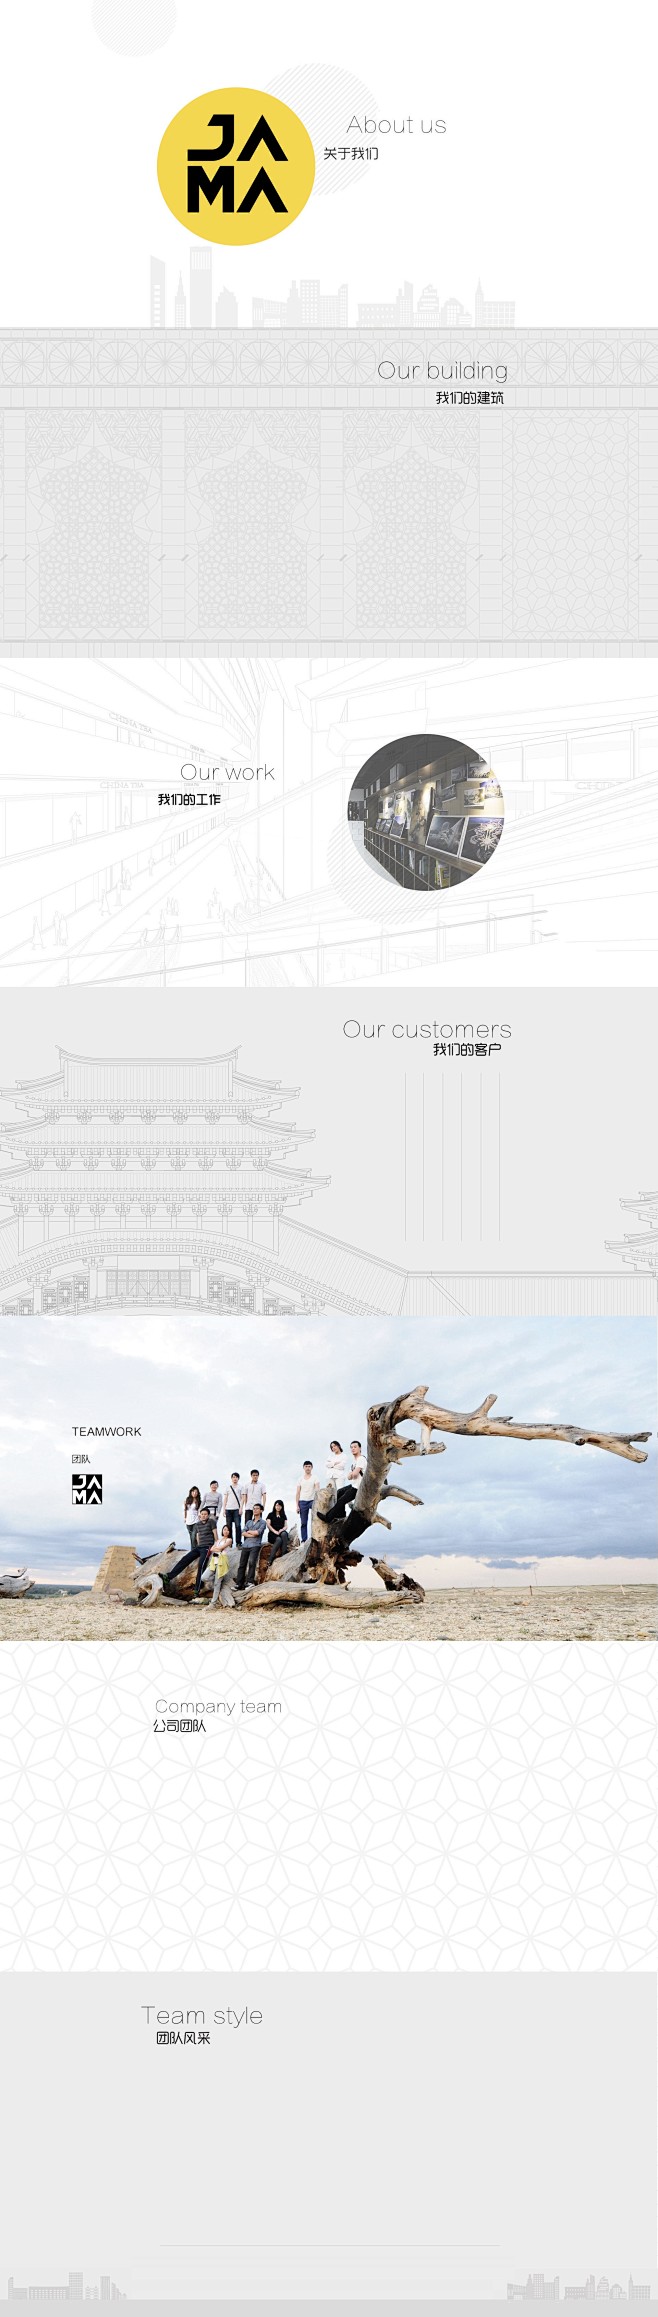 上海角马建筑设计咨询有限公司